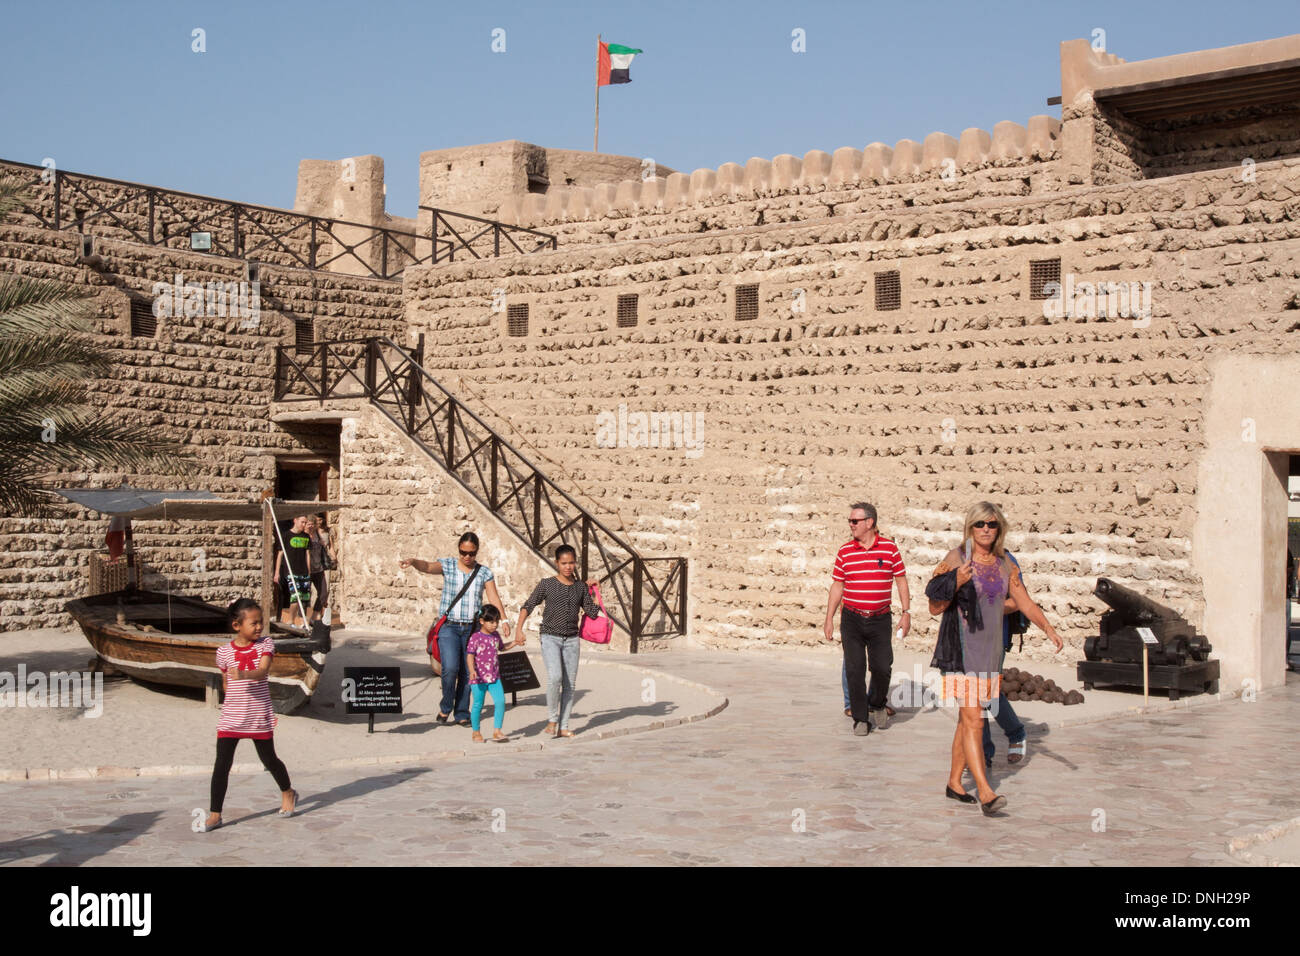 Les touristes qui visitent le FORT DE DUBAÏ, aujourd'hui transformé en musée de Dubaï, DUBAÏ, ÉMIRATS ARABES UNIS, MOYEN ORIENT Banque D'Images